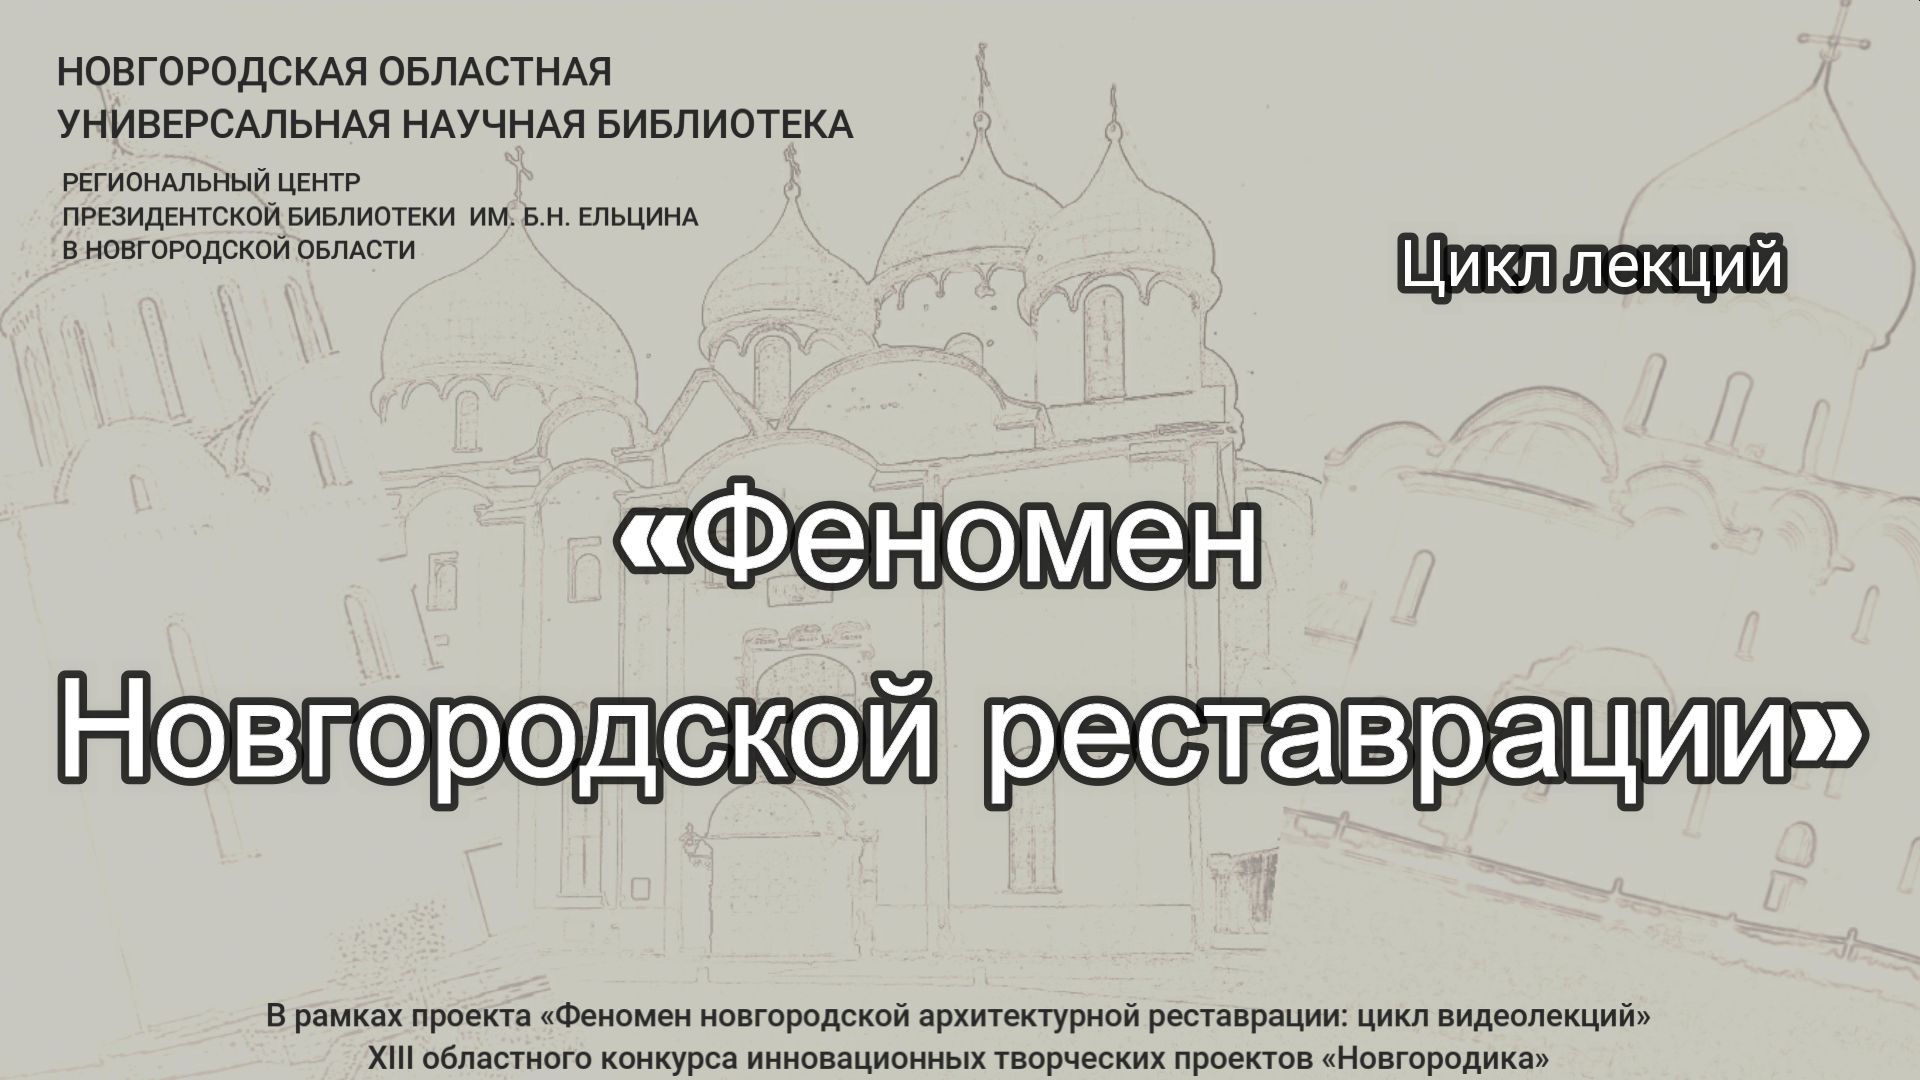 Цикл видеолекций «Феномен новгородской реставрации»